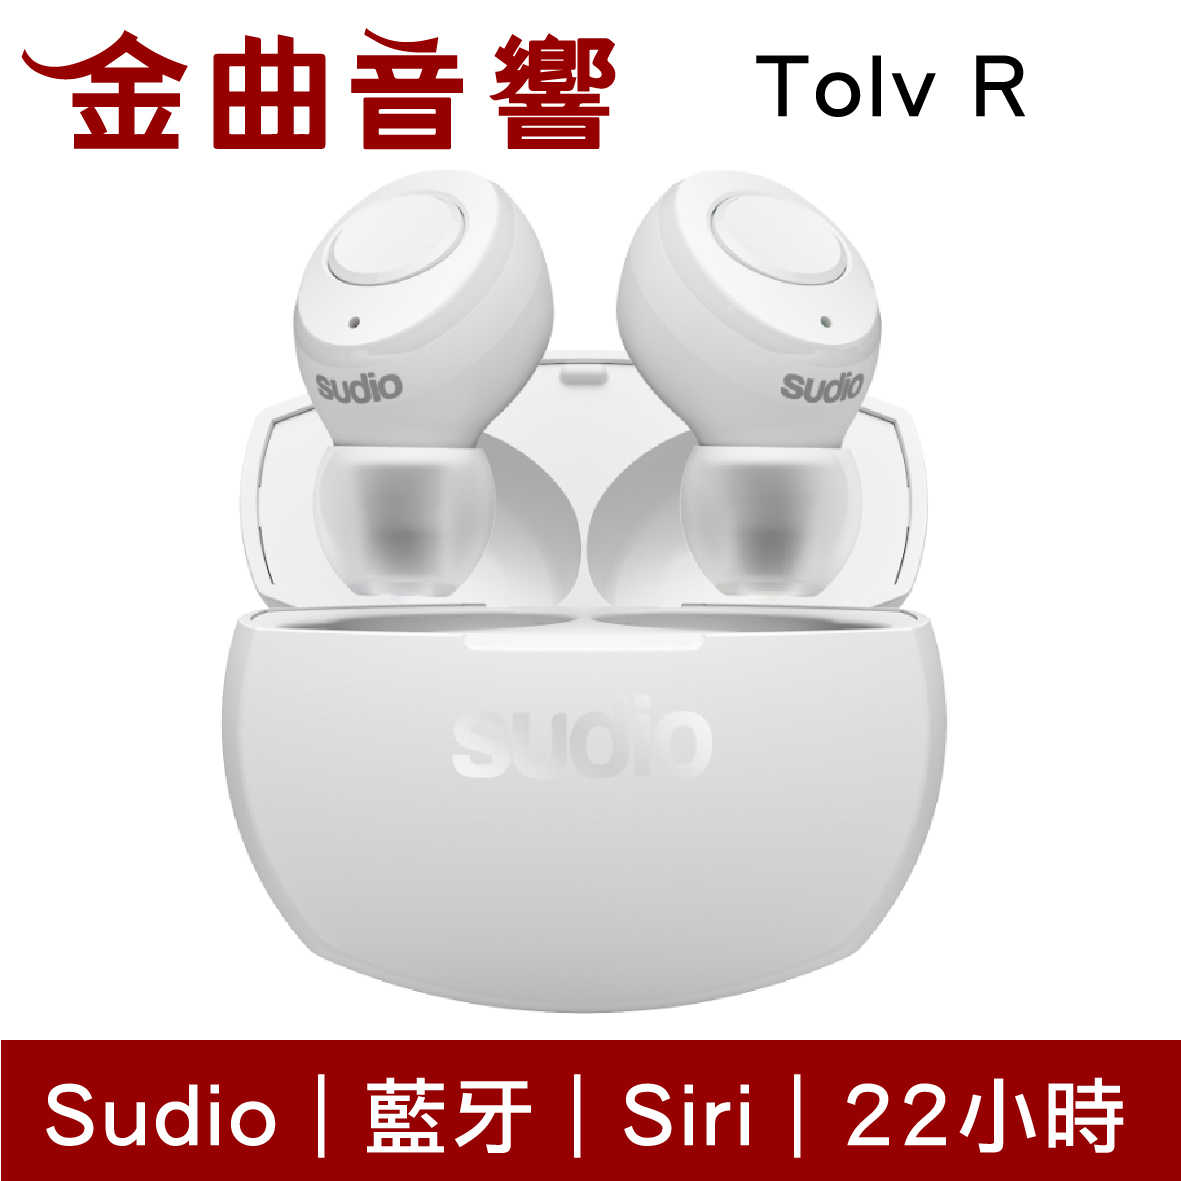 Sudio Tolv R 藍色 真無線 藍芽耳機 可通話 語音助理 TolvR | 金曲音響